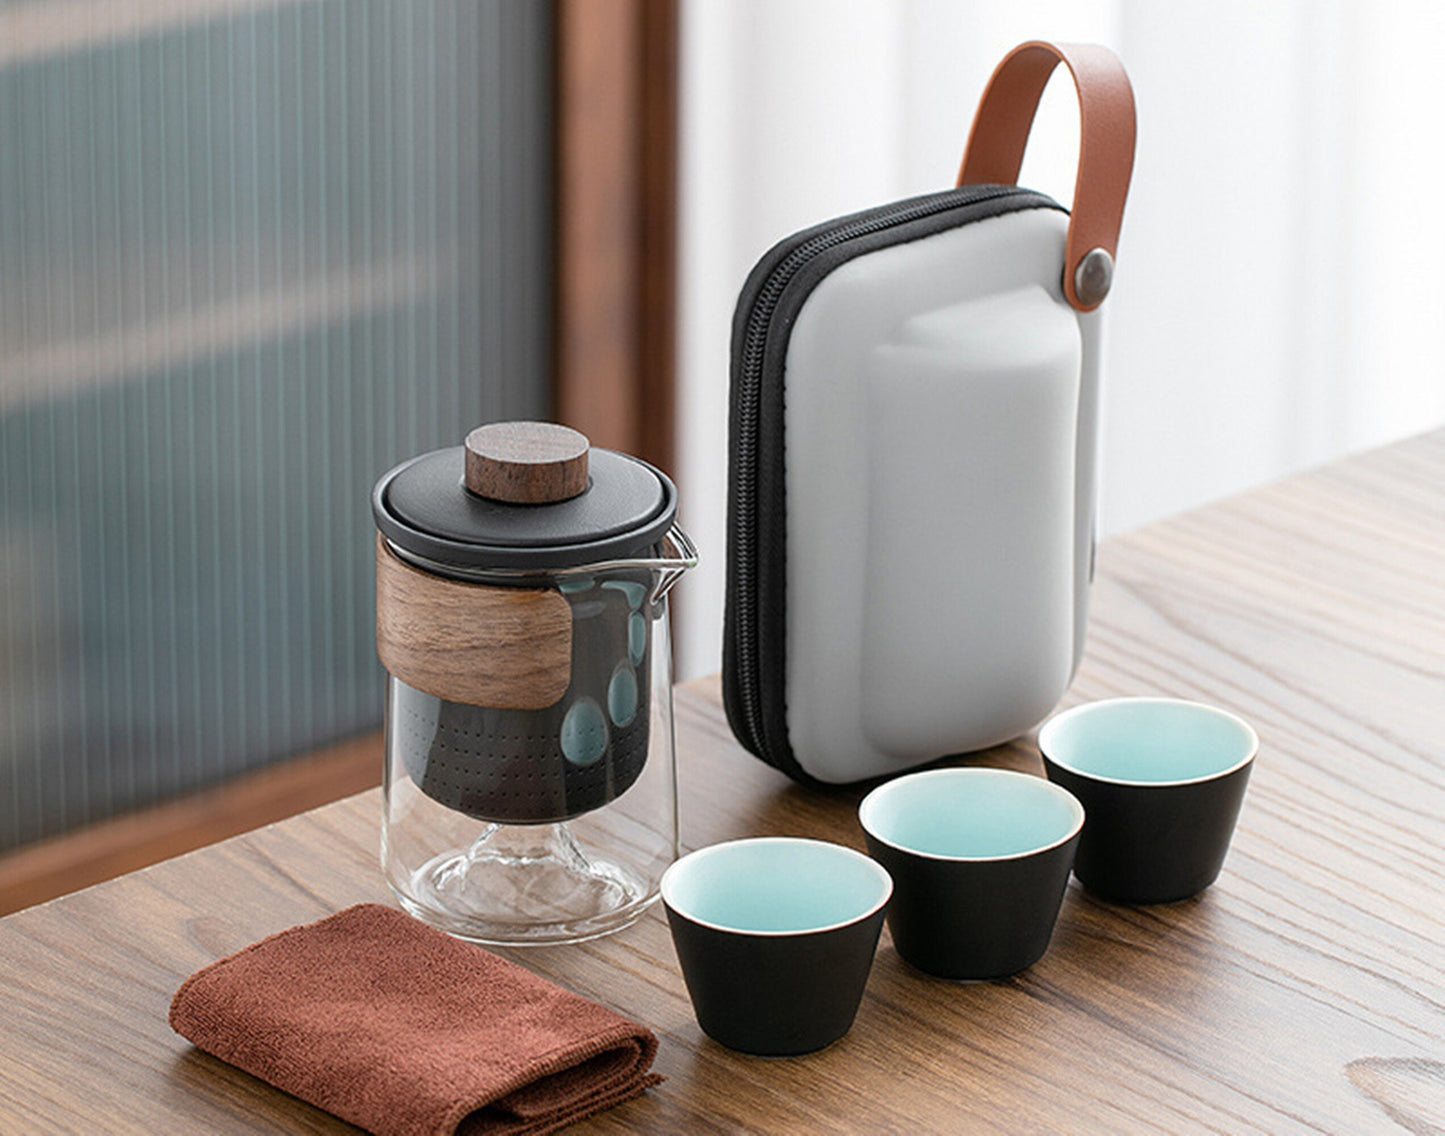 Japan Handmade Mountain Travel Tea Set|Teapot Set| Small Set Glass Teapot Set |Outdoor 1 Pot 3 Cus Ceramic Cracking Cup| Tea Pot with Filter